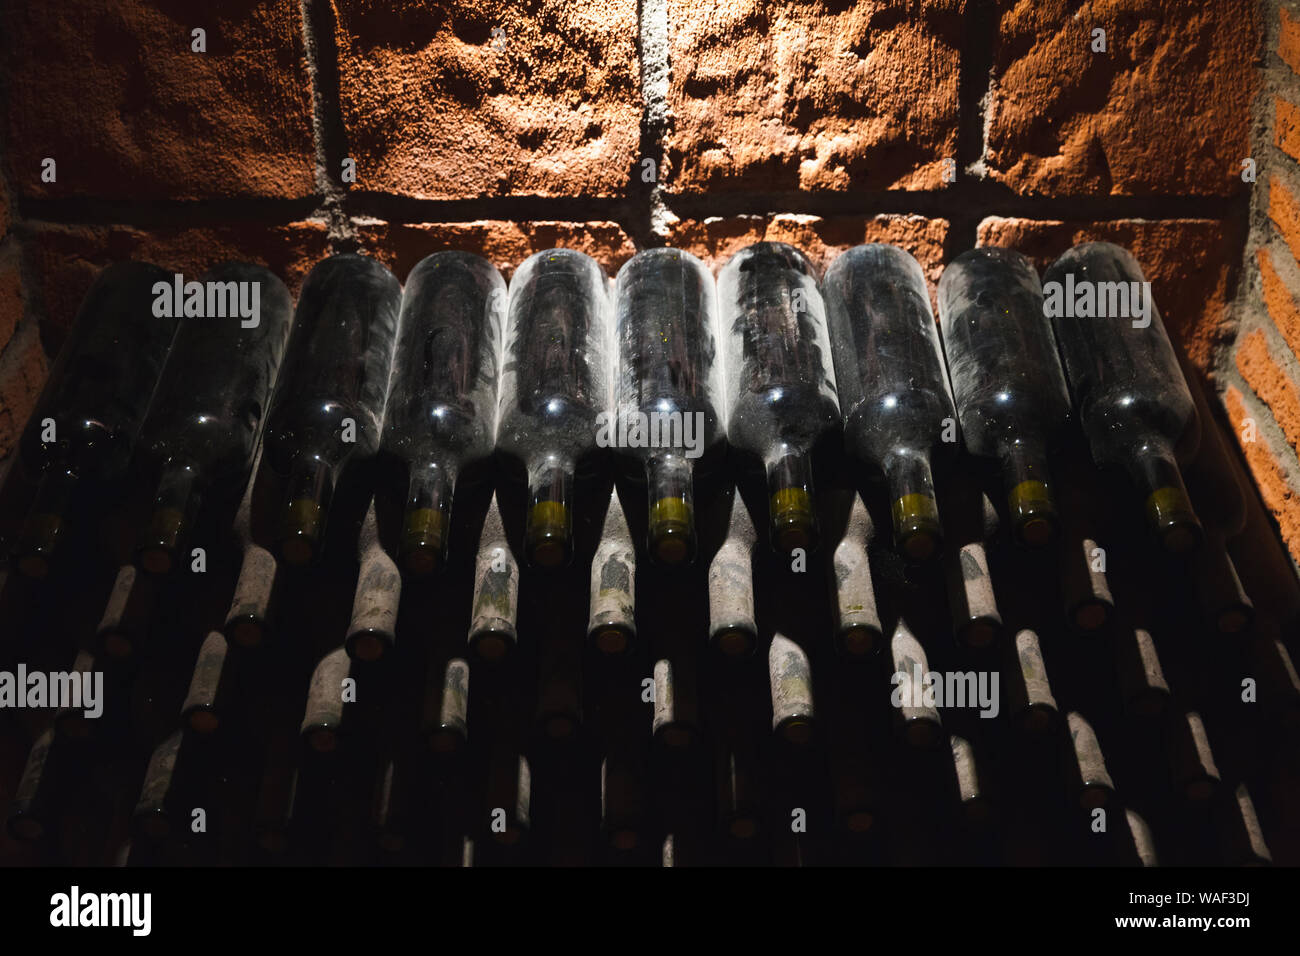 Staubige Flaschen Wein in einem dunklen Weinkeller legen gestapelt Stockfoto